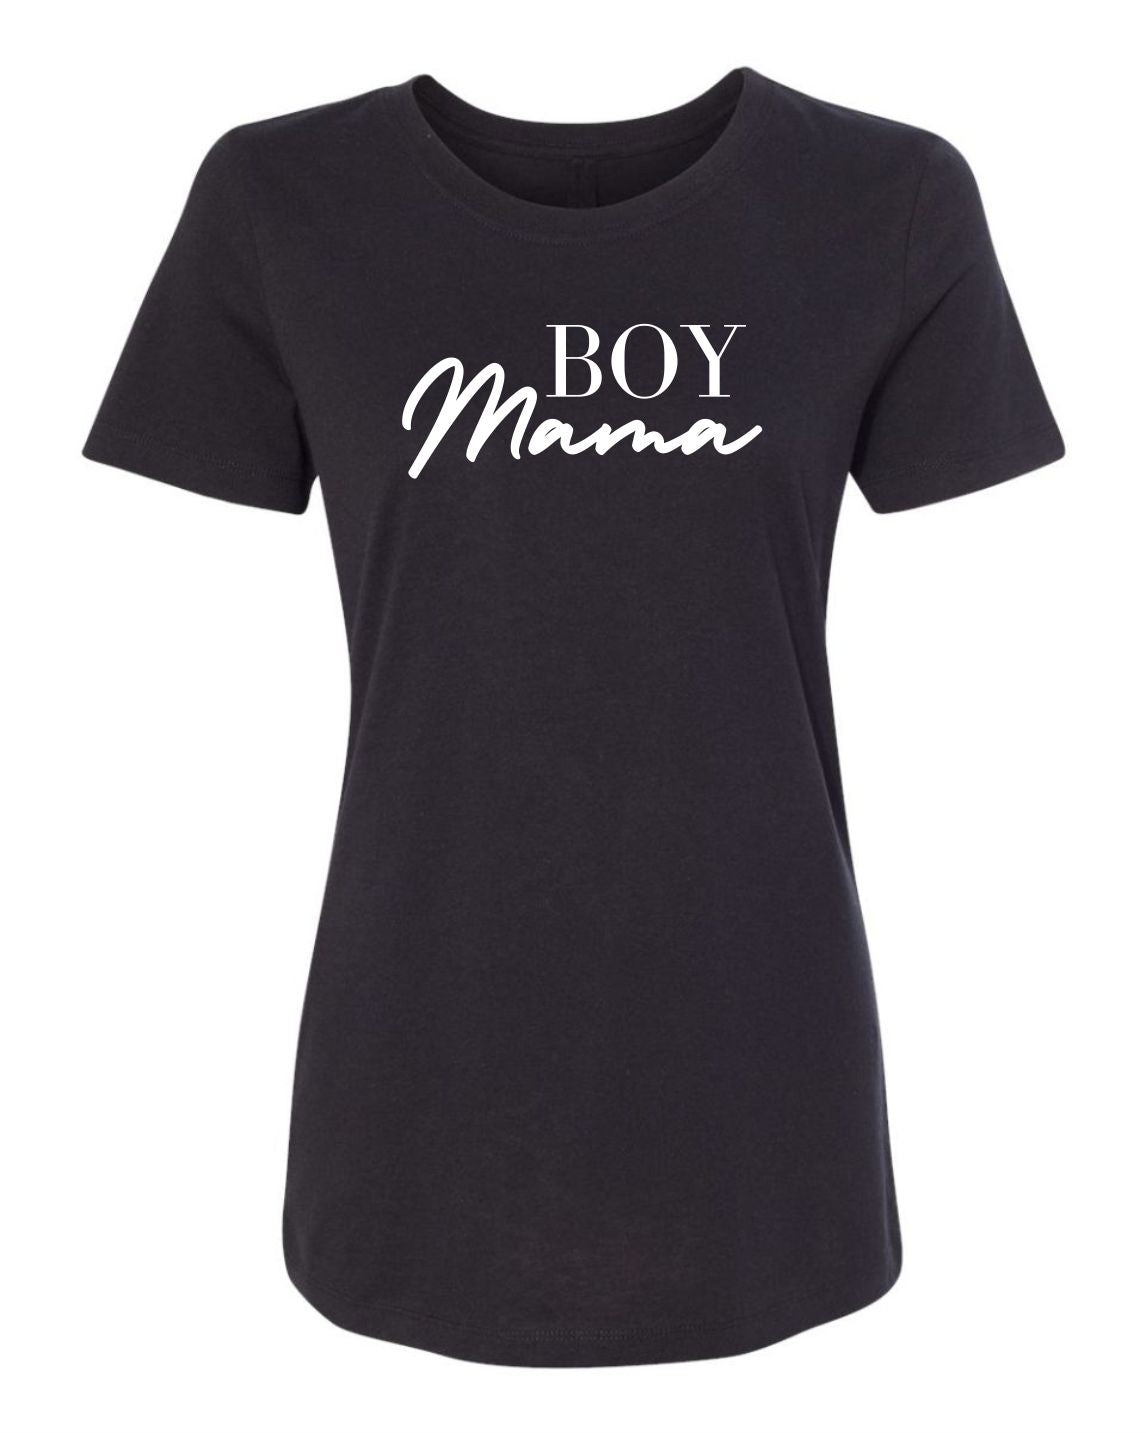 "Boy Mama" T-Shirt